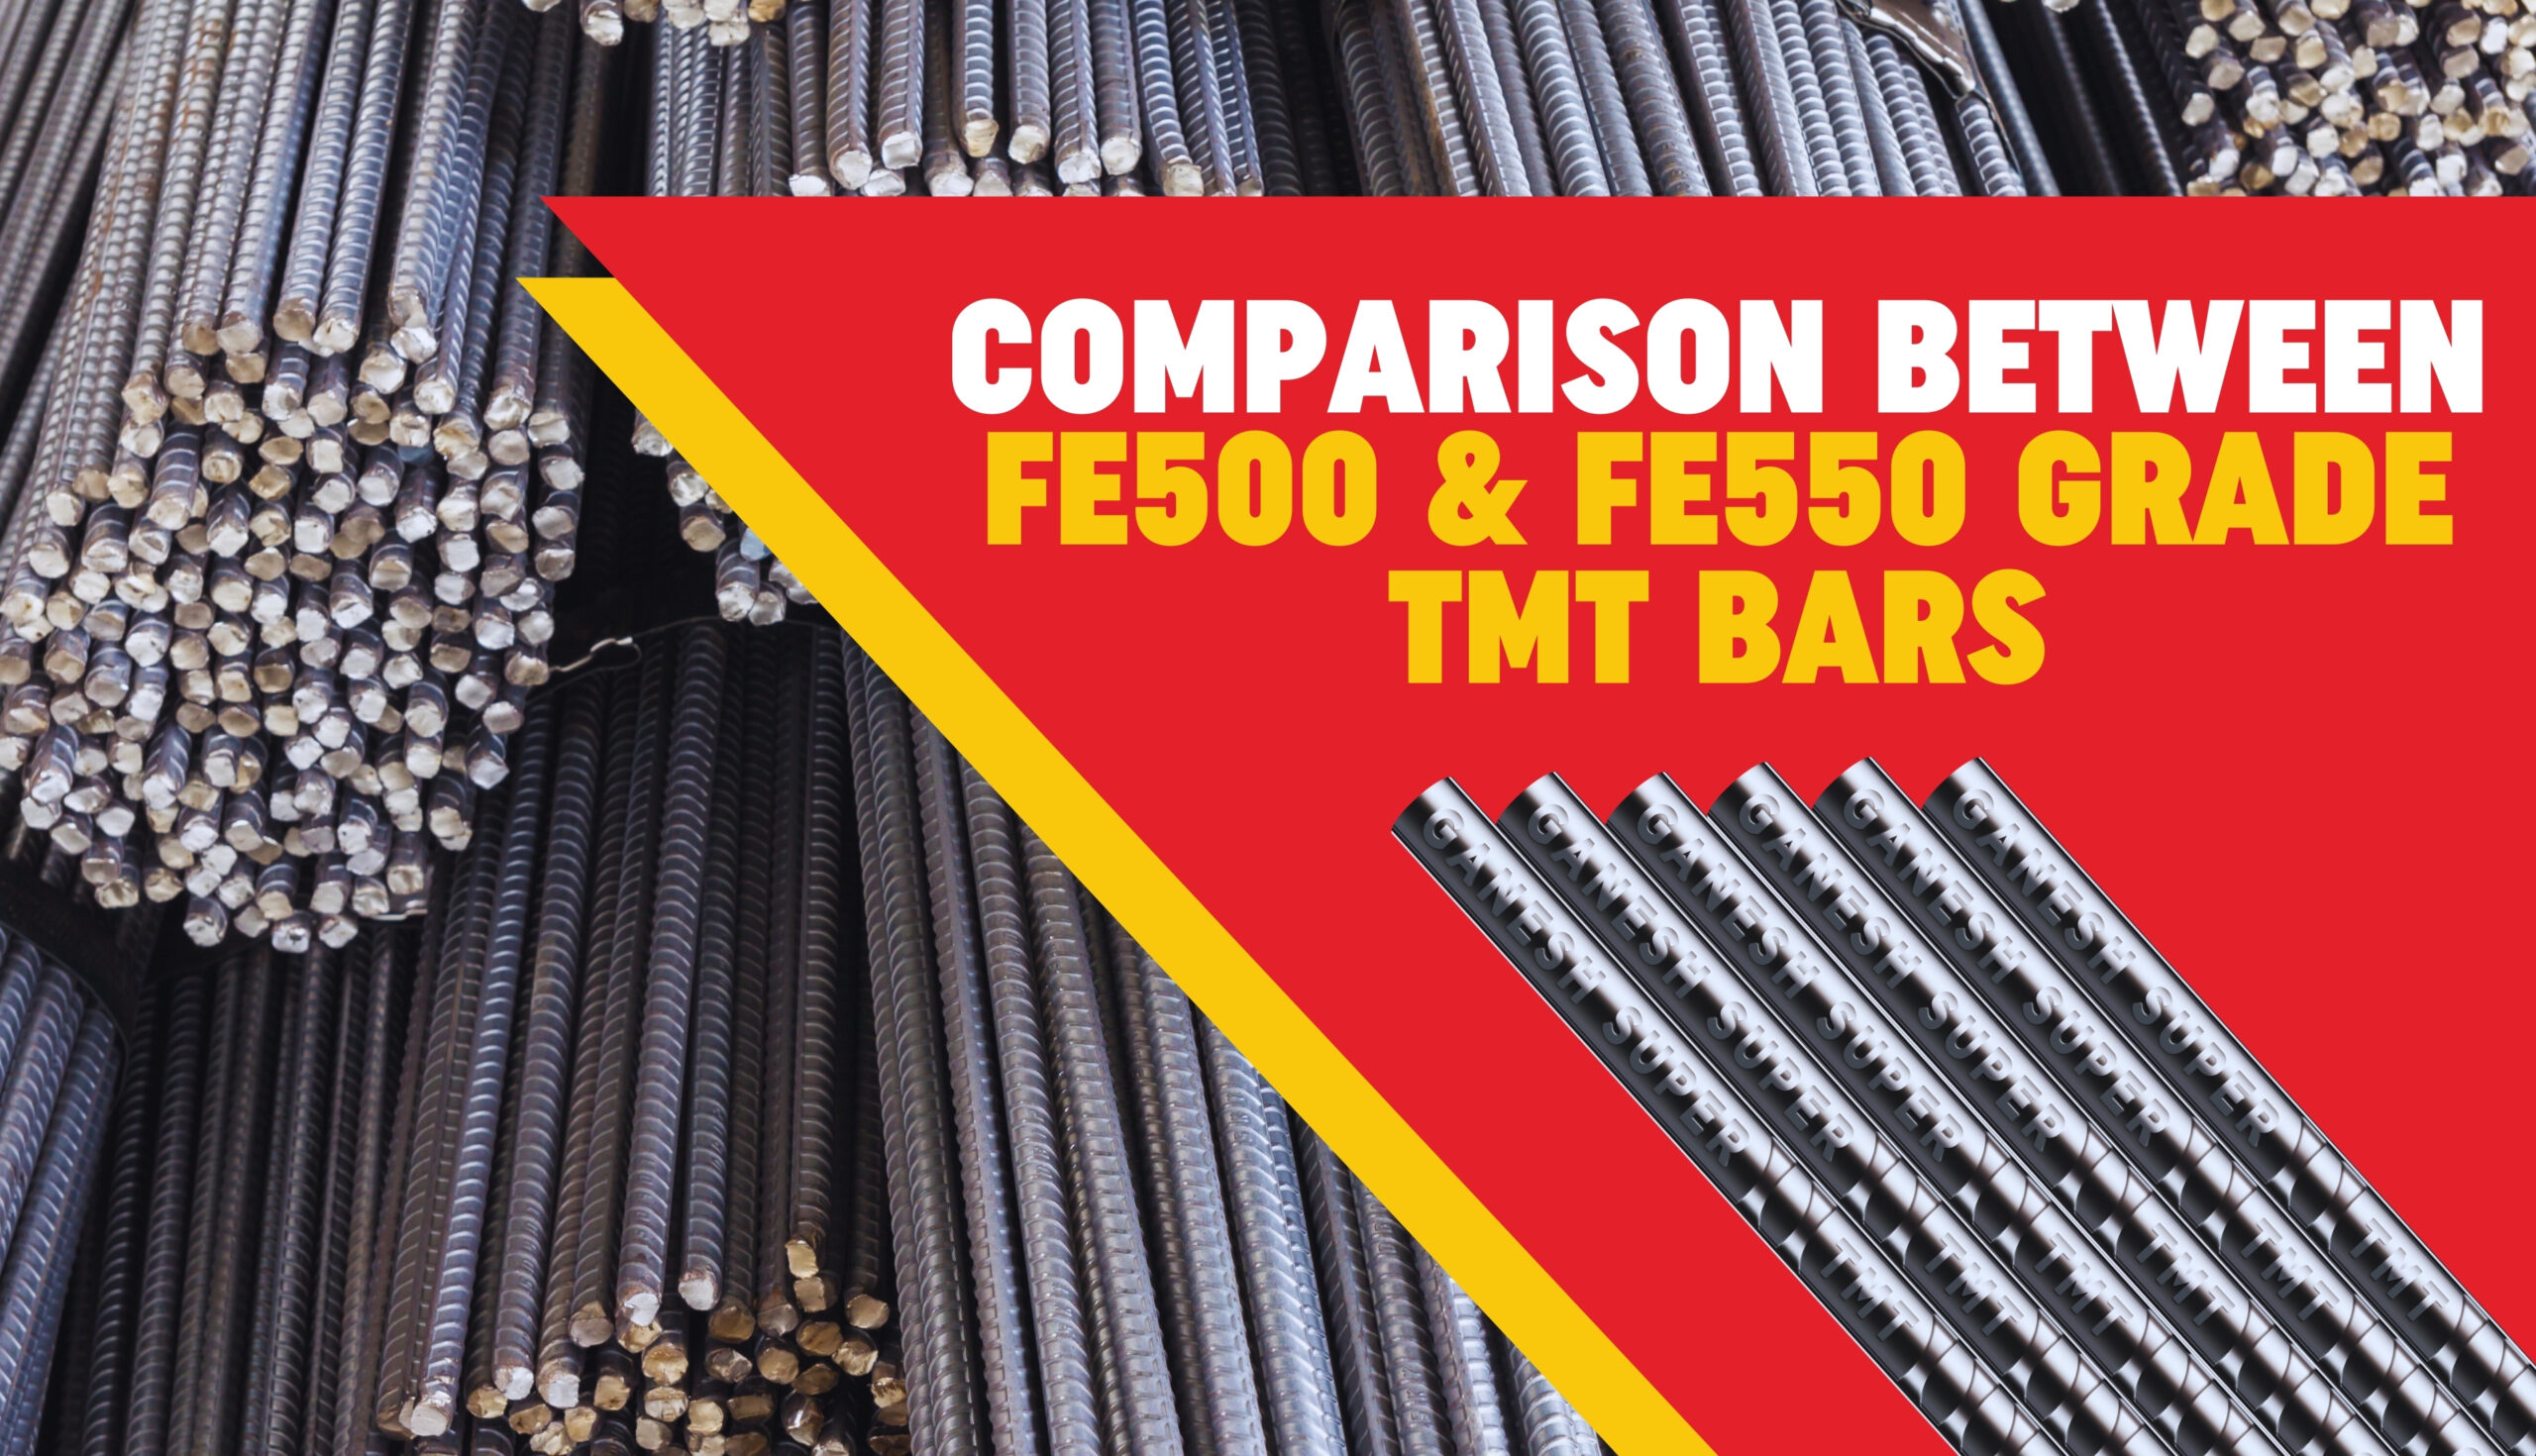 Comparison Between Fe500 & Fe550 Grade TMT Bars